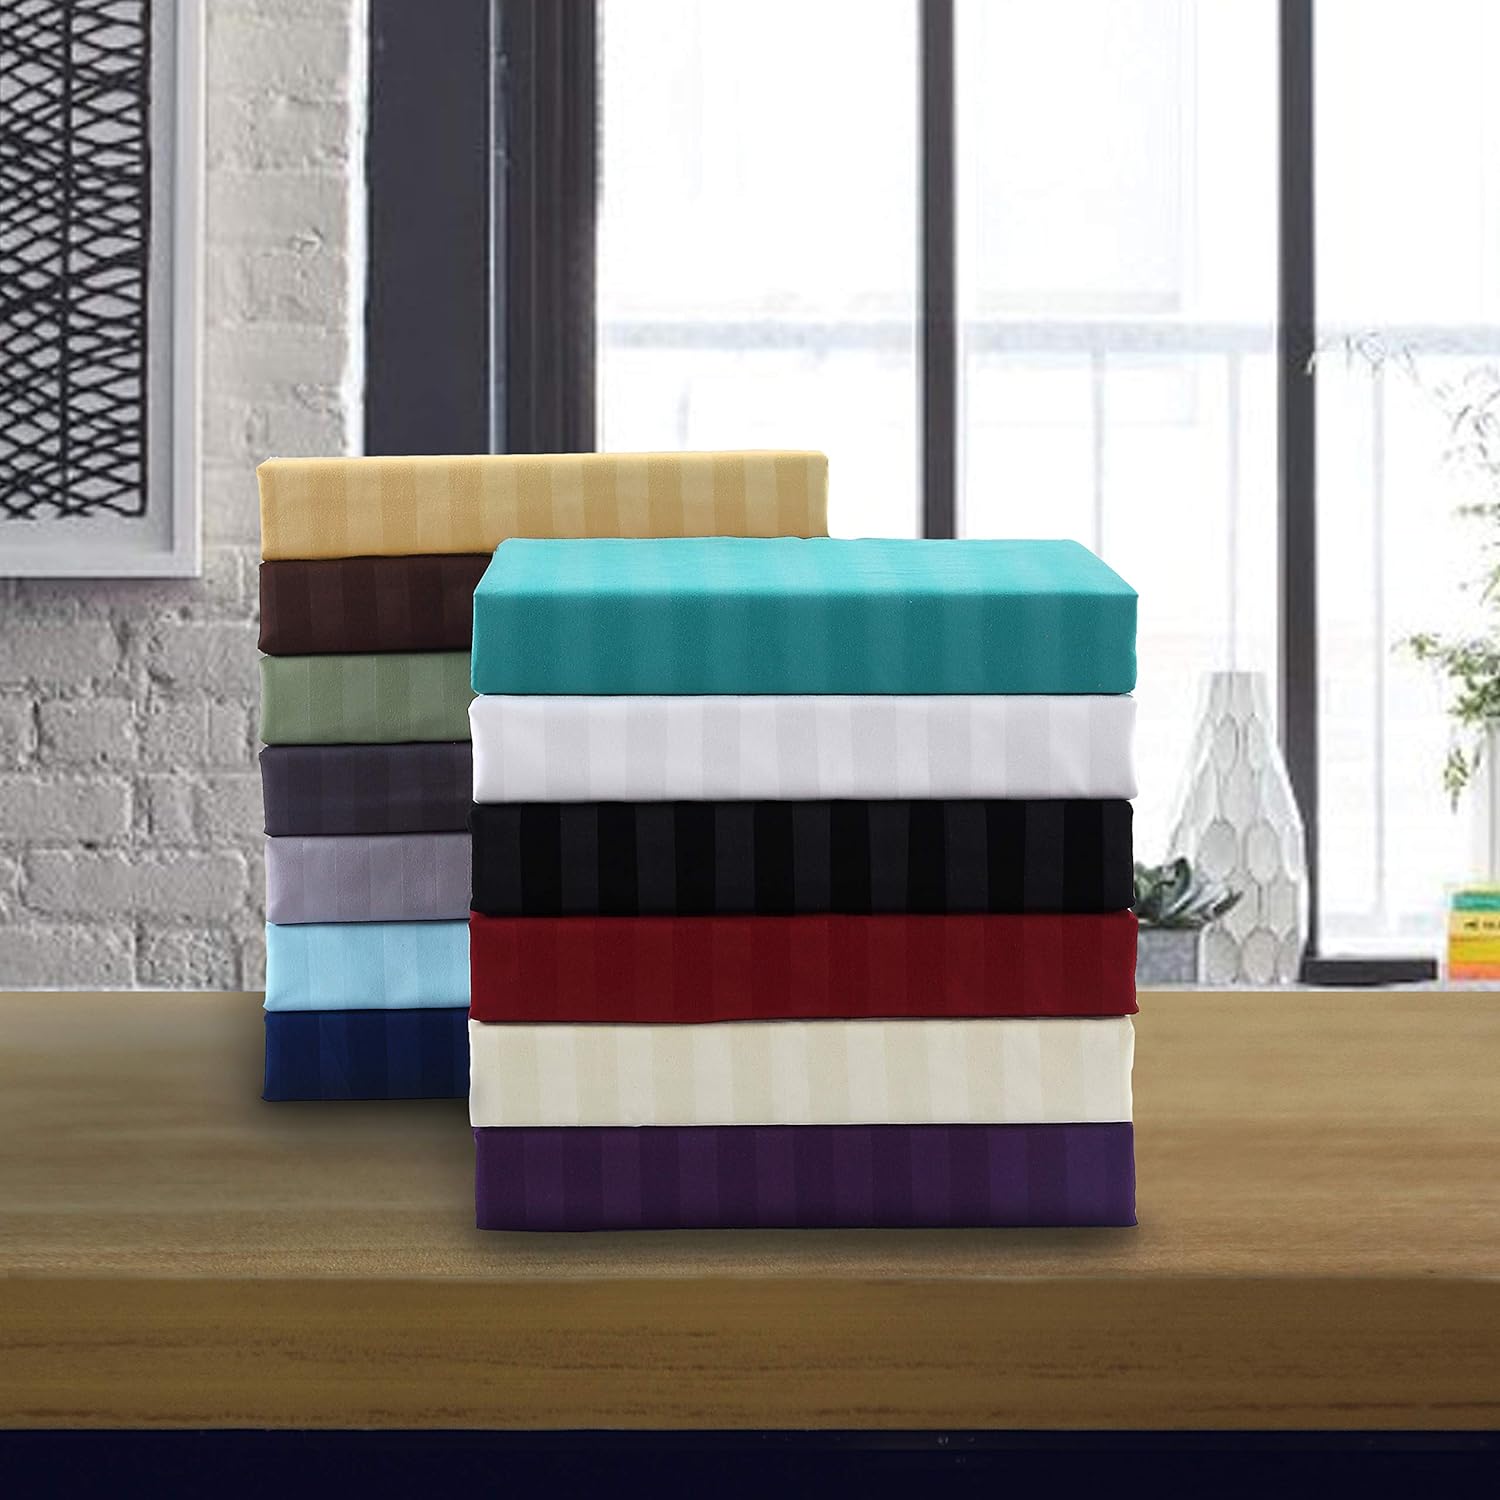 El juego de sábanas de 6 piezas más cómodo y suave. Algodón egipcio de